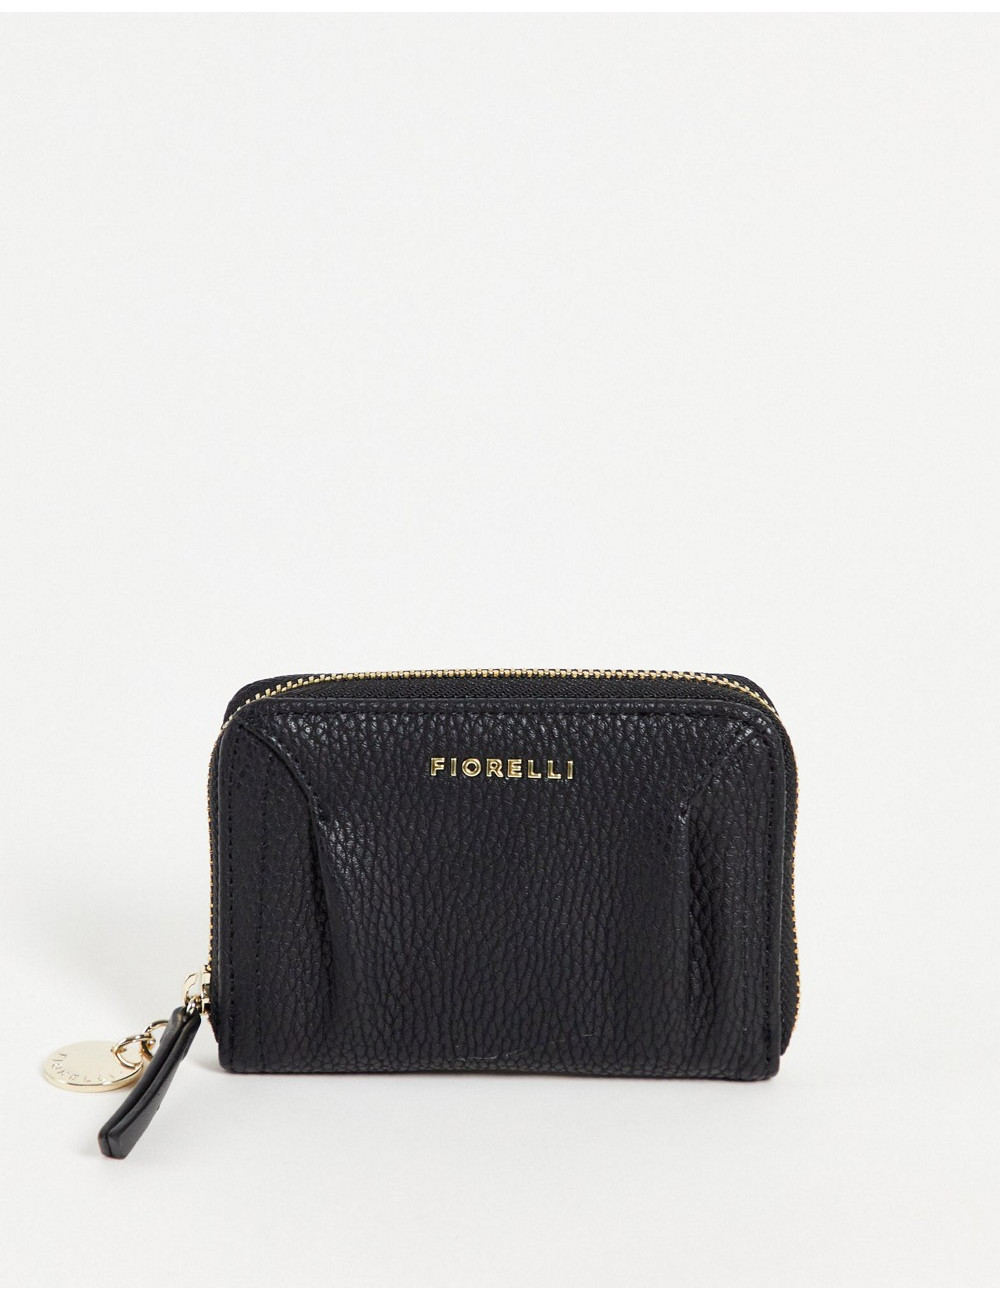 Fiorelli erika purse in black